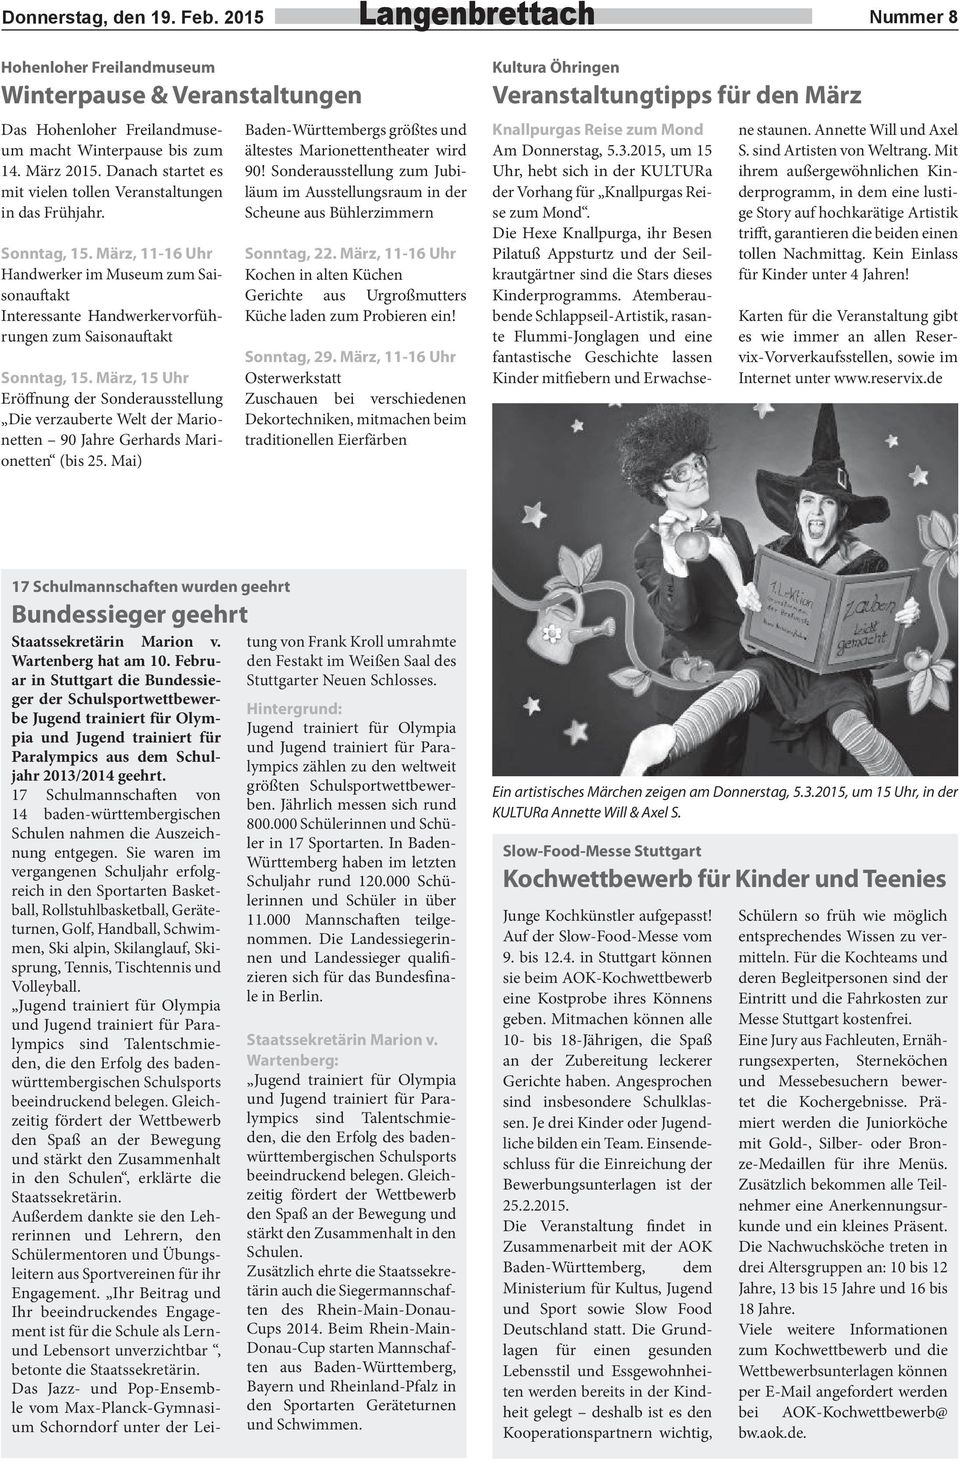 März, 15 Uhr Eröfnung der Sonderausstellung Die verzauberte Welt der Marionetten 90 Jahre Gerhards Marionetten (bis 25. Mai) Baden-Württembergs größtes und ältestes Marionettentheater wird 90!